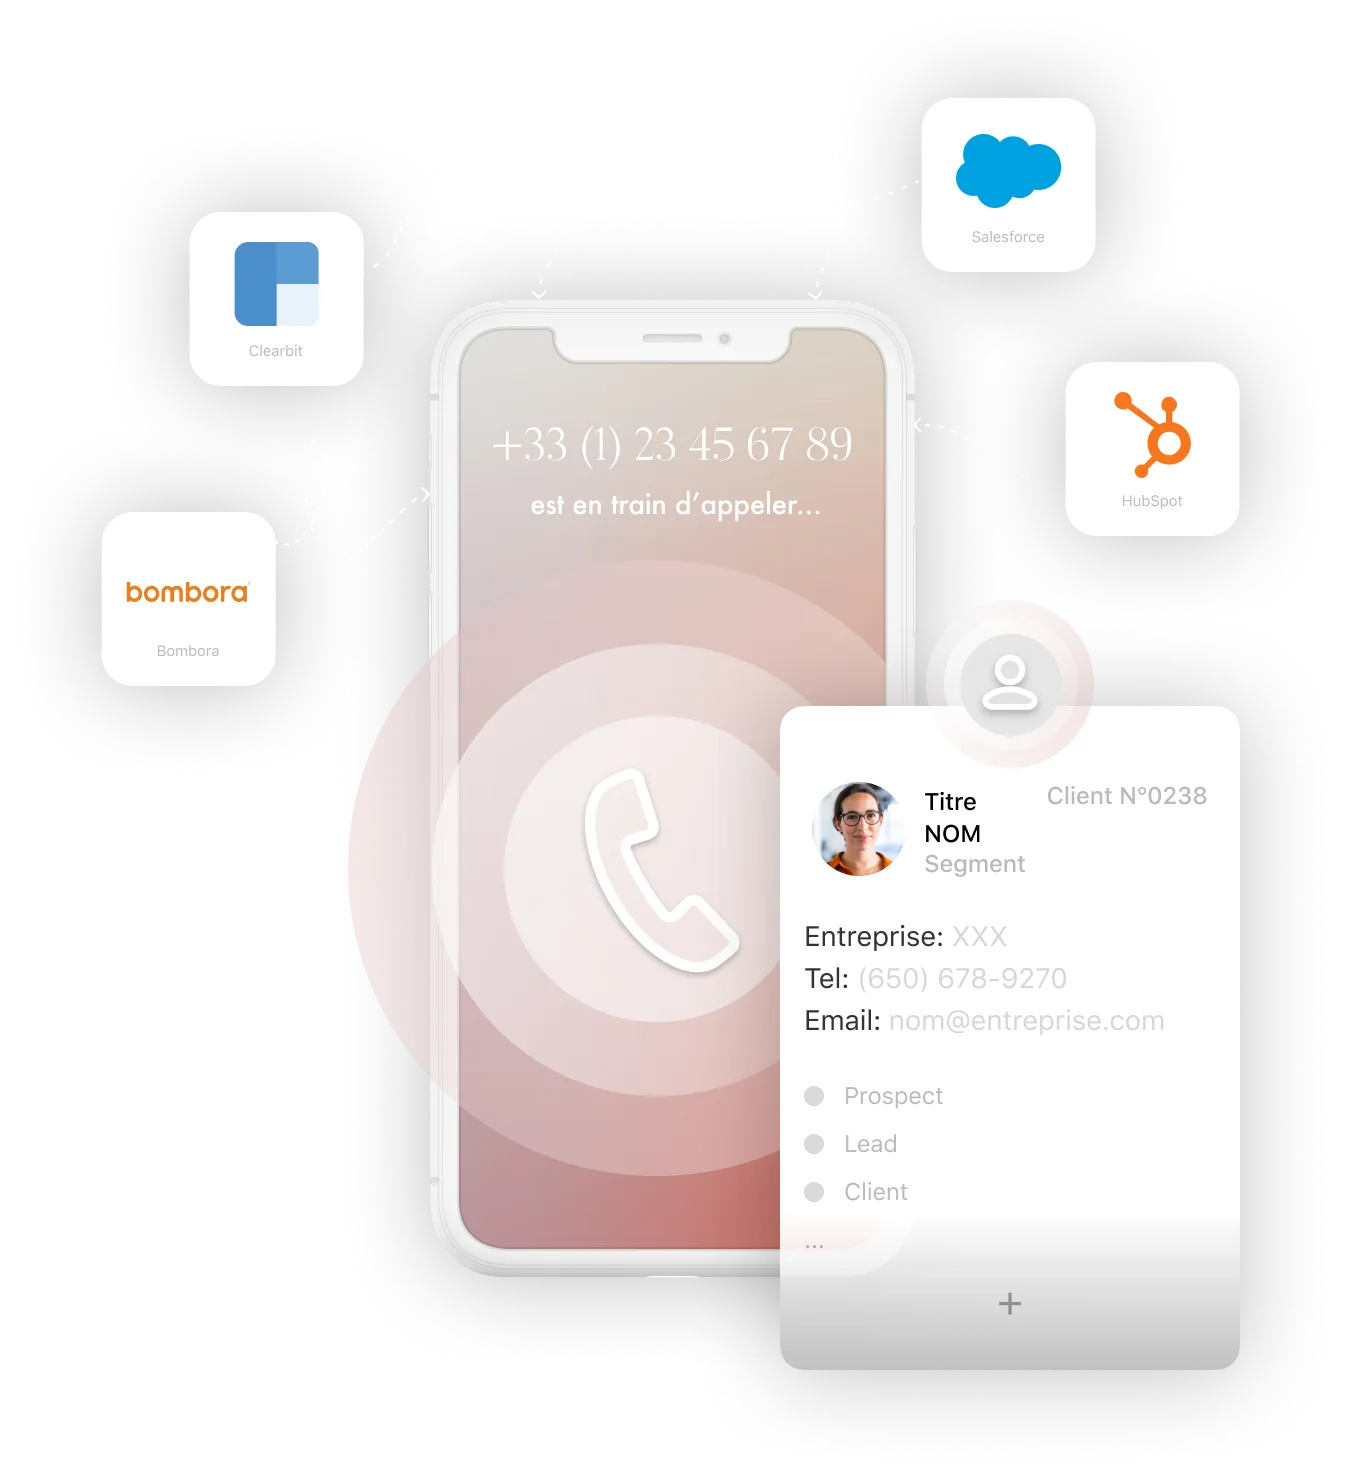 Les Actions Callr peuvent se connecter à Bombora, Clearbit, Salesforce, HubSpot, et bien d'autres